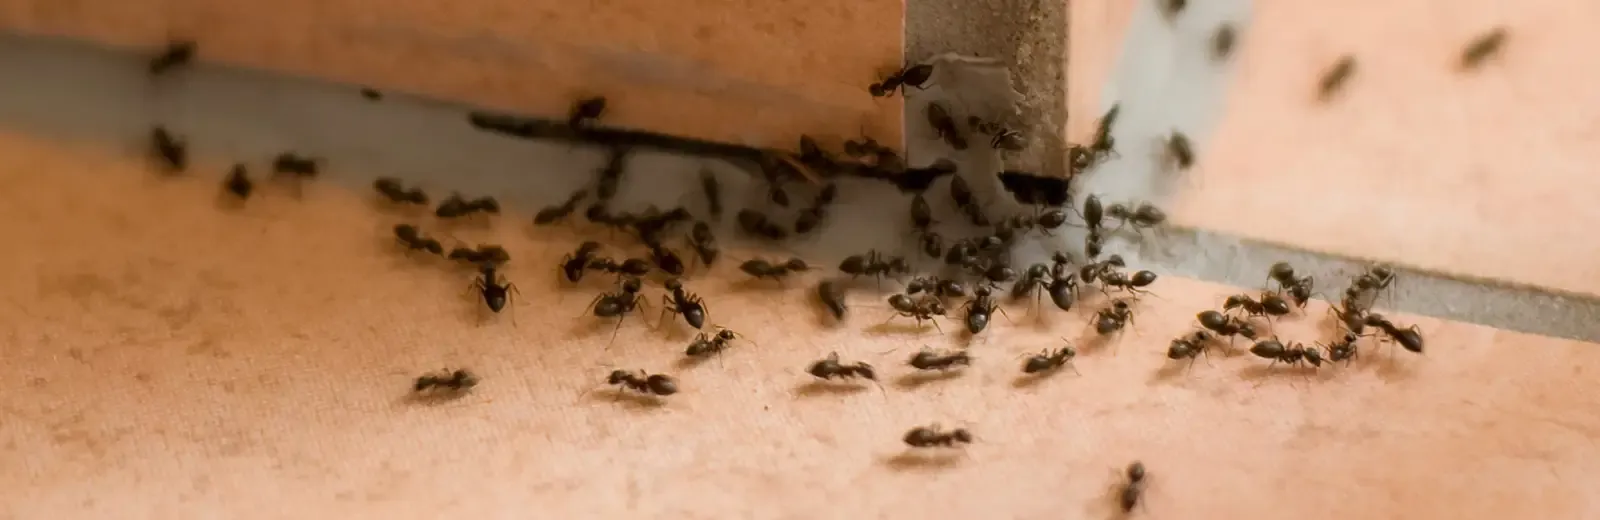 ants on floor in home